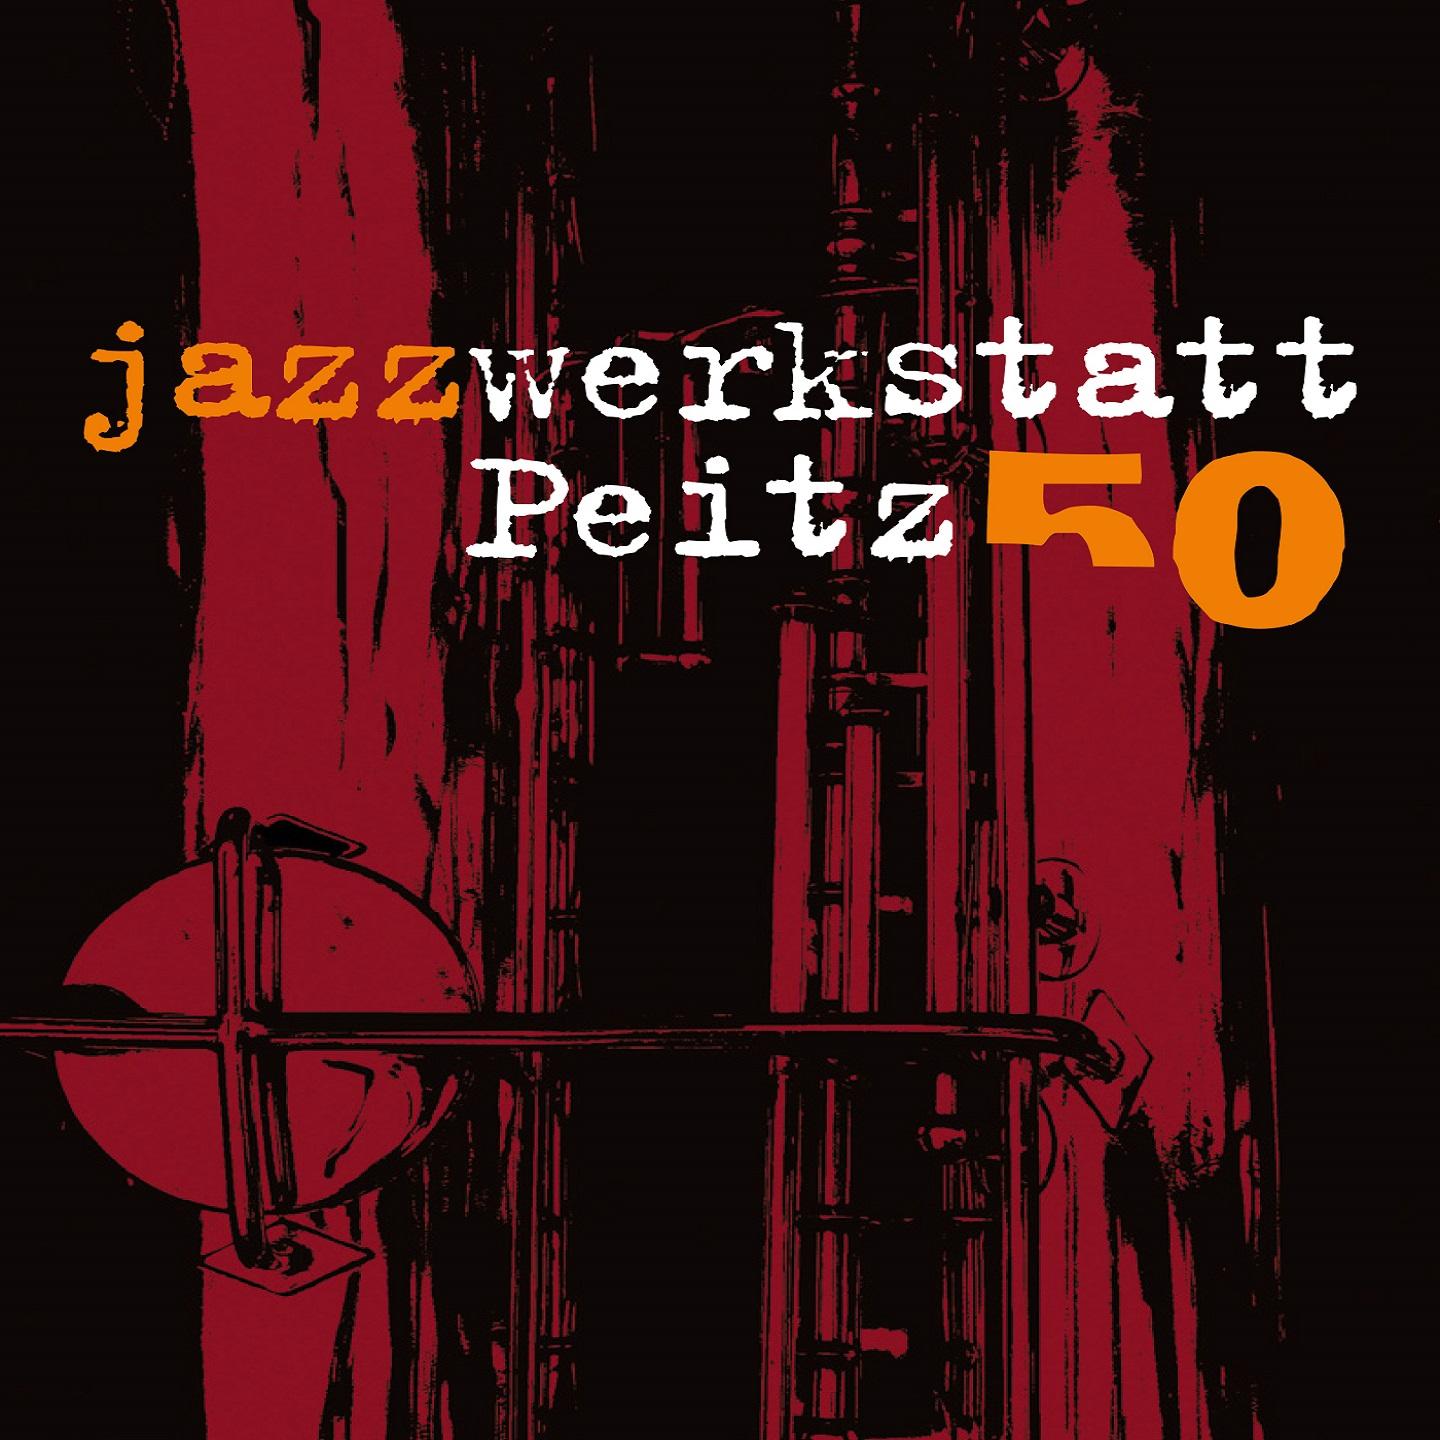 Journal Violone, Pt.II-IV (Live at Jazzwerkstatt Peitz No. 33, 16/03/1980)